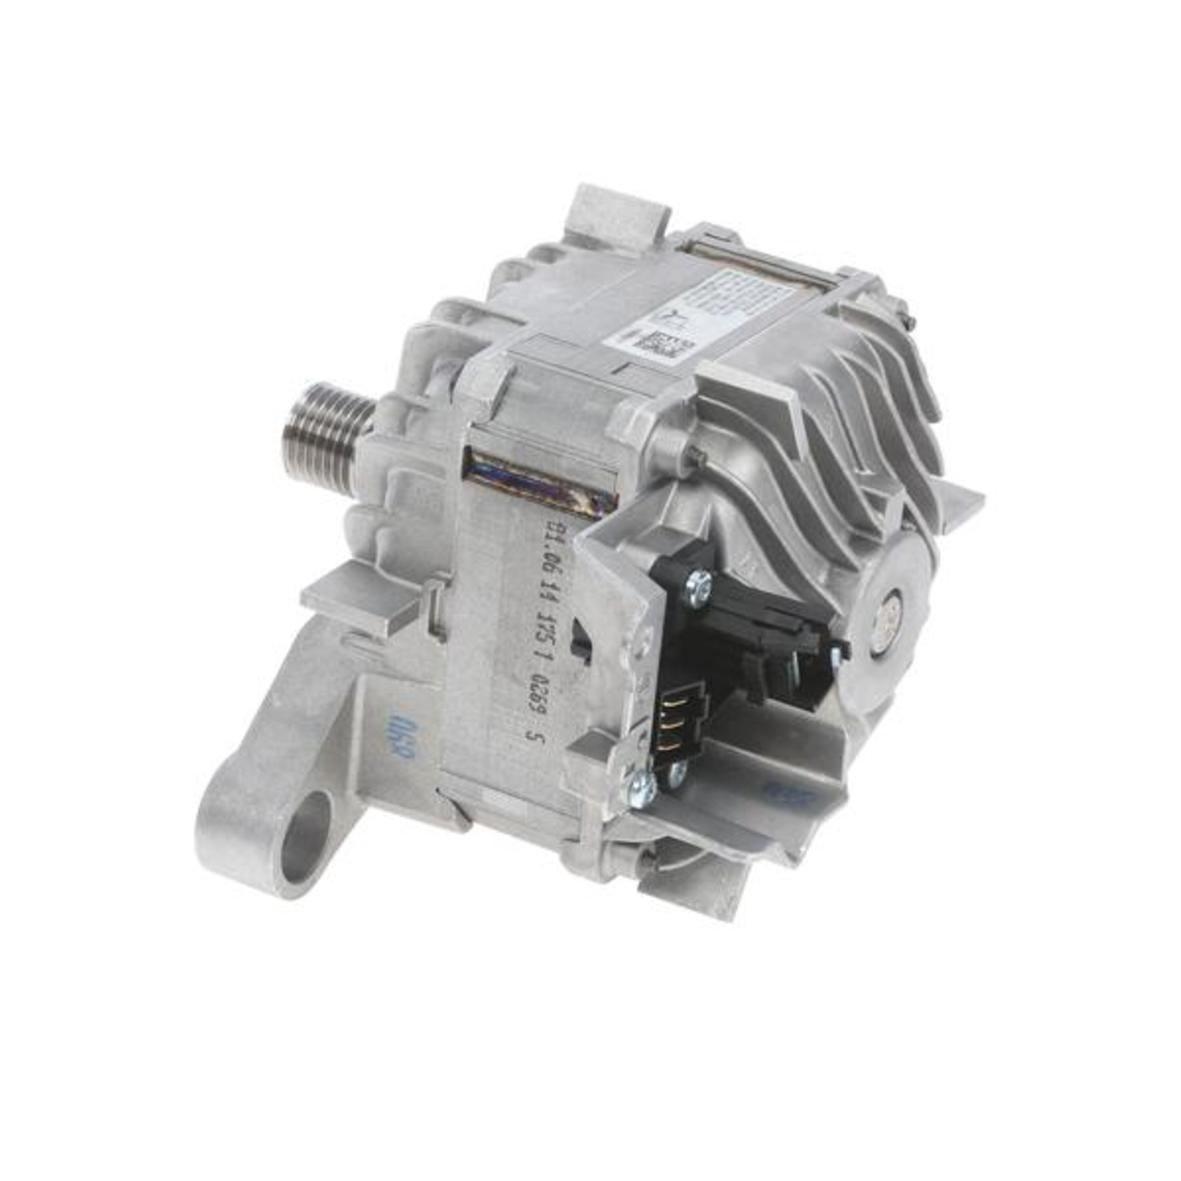 Motor kompatibel mit Bosch 00145457 für Waschmaschine